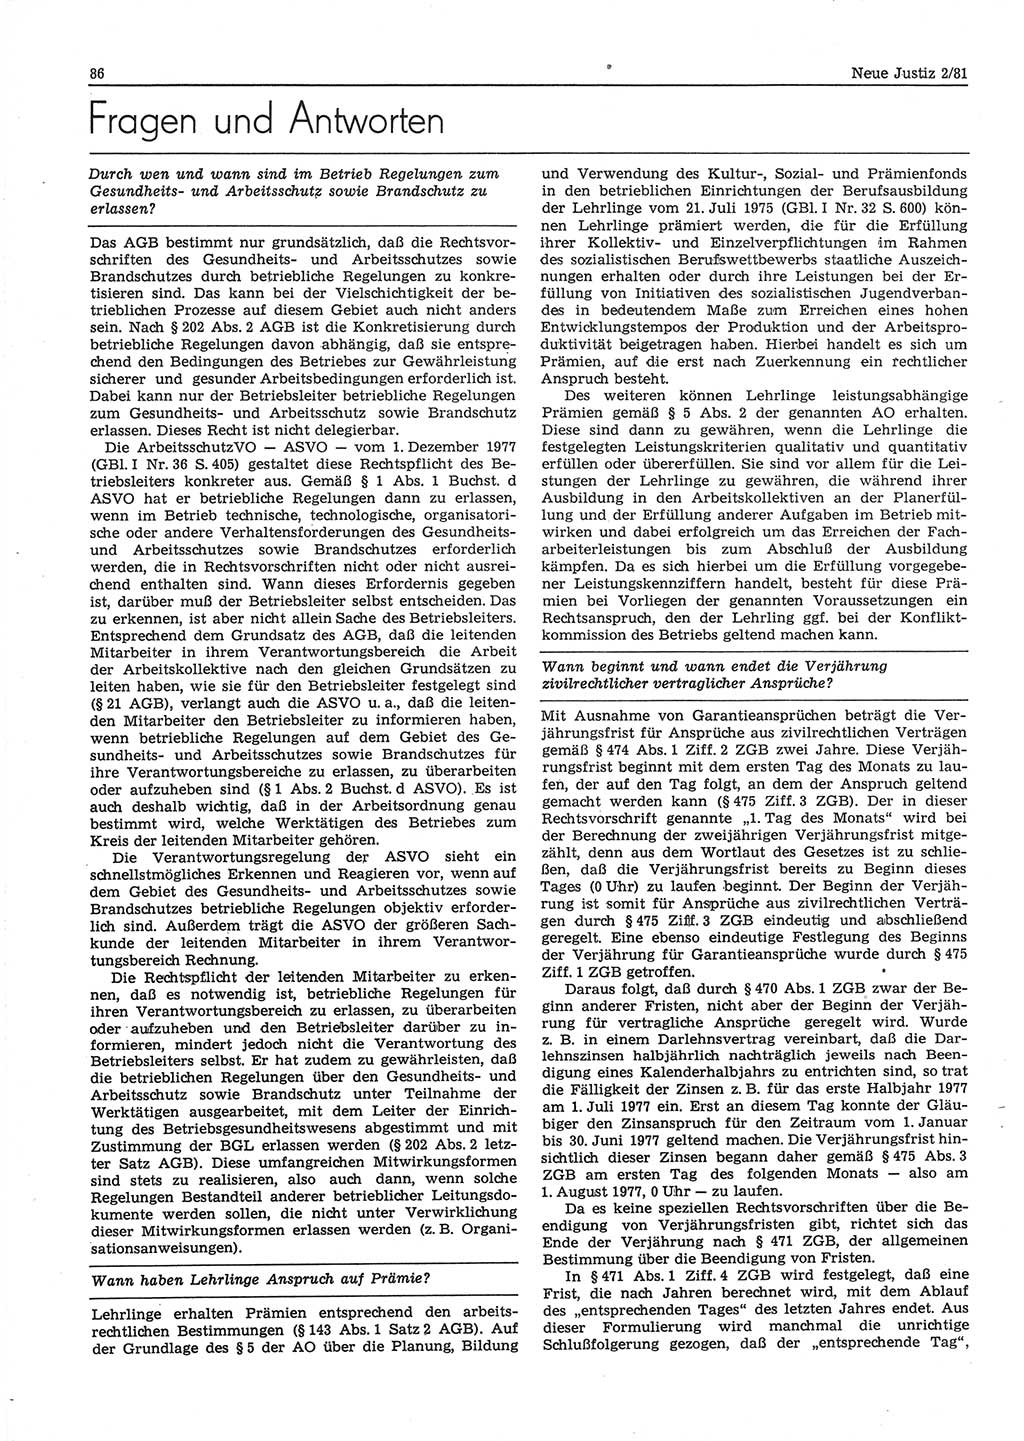 Neue Justiz (NJ), Zeitschrift für sozialistisches Recht und Gesetzlichkeit [Deutsche Demokratische Republik (DDR)], 35. Jahrgang 1981, Seite 86 (NJ DDR 1981, S. 86)